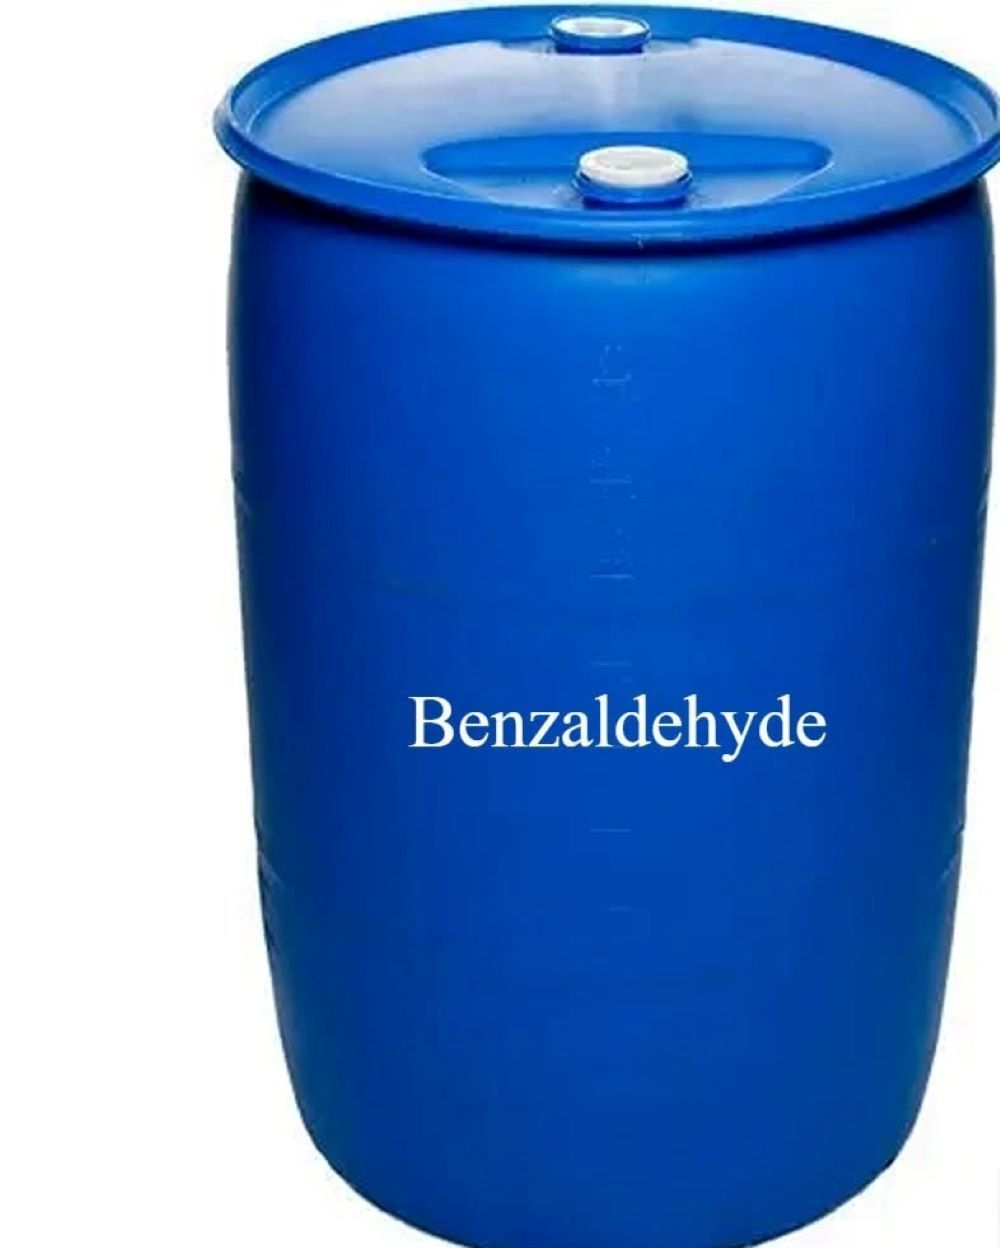 Benzaldehyde (Benzoic aldehyde)